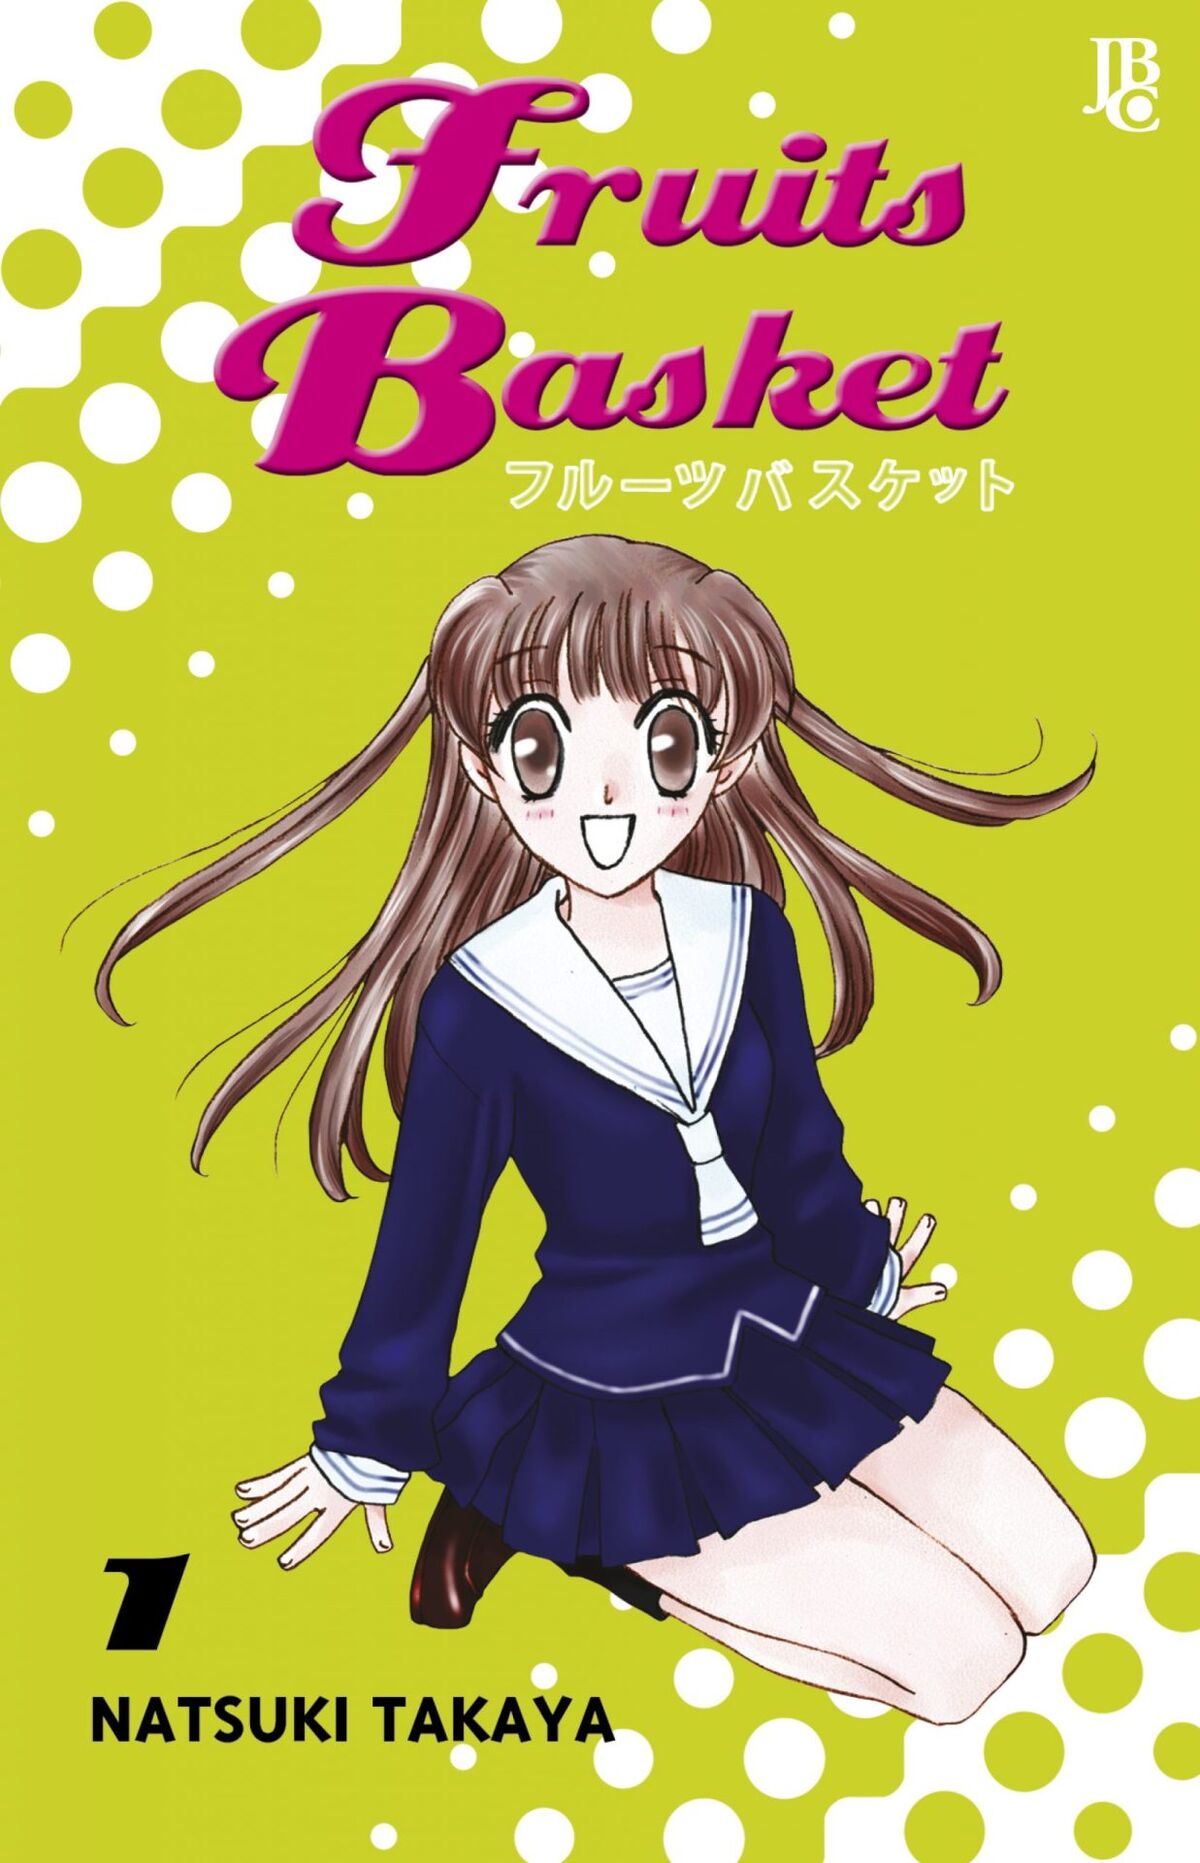 Fruits Basket 2 Temporada Dublado - Episódio 4 - Animes Online